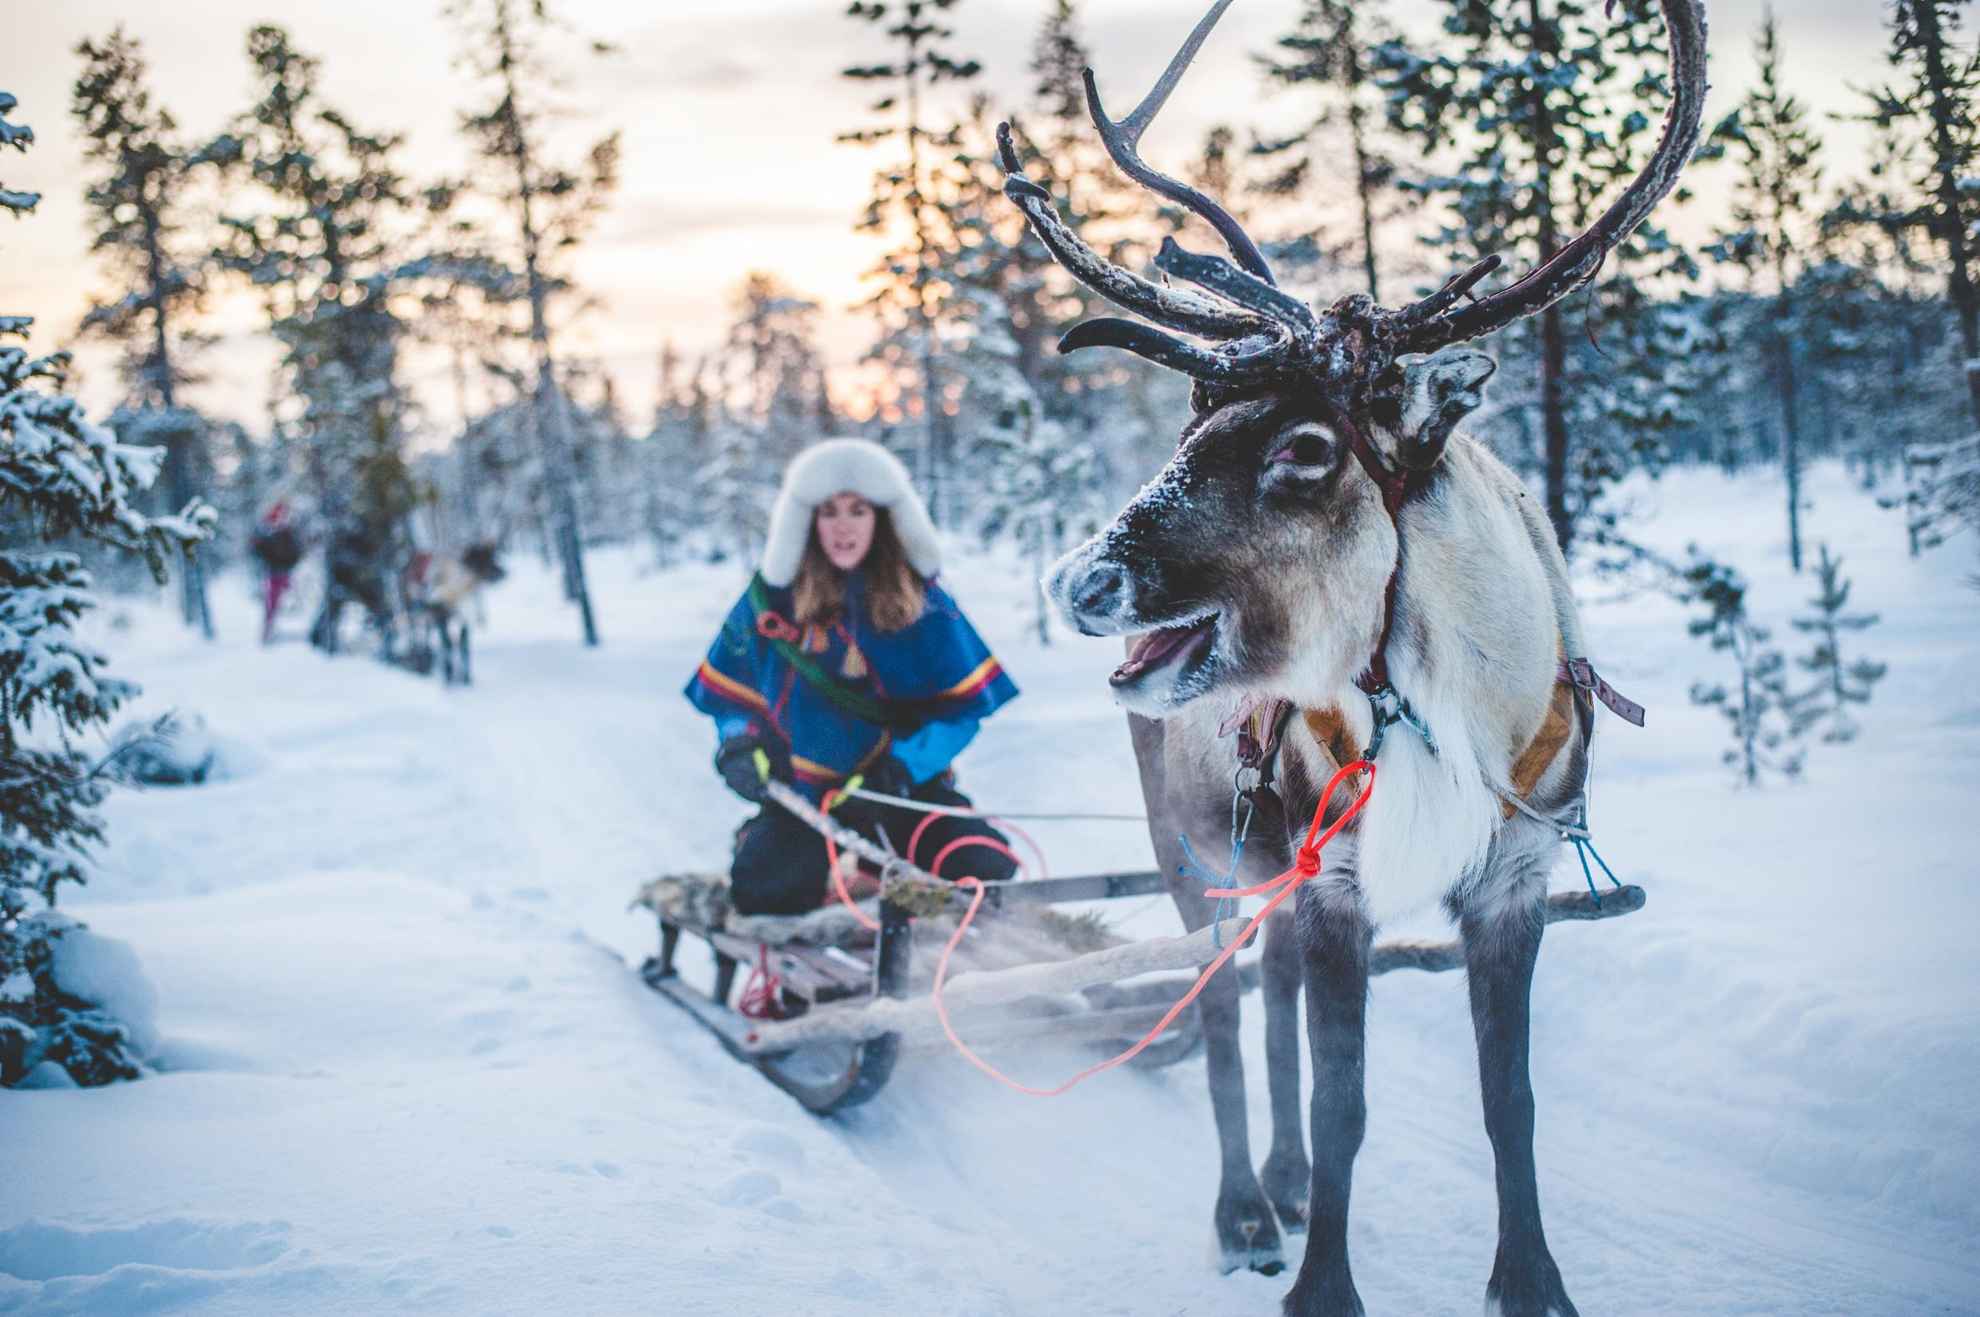 Een Sami-vrouw rijdt met een rendierslee in een besneeuwd winterbos.